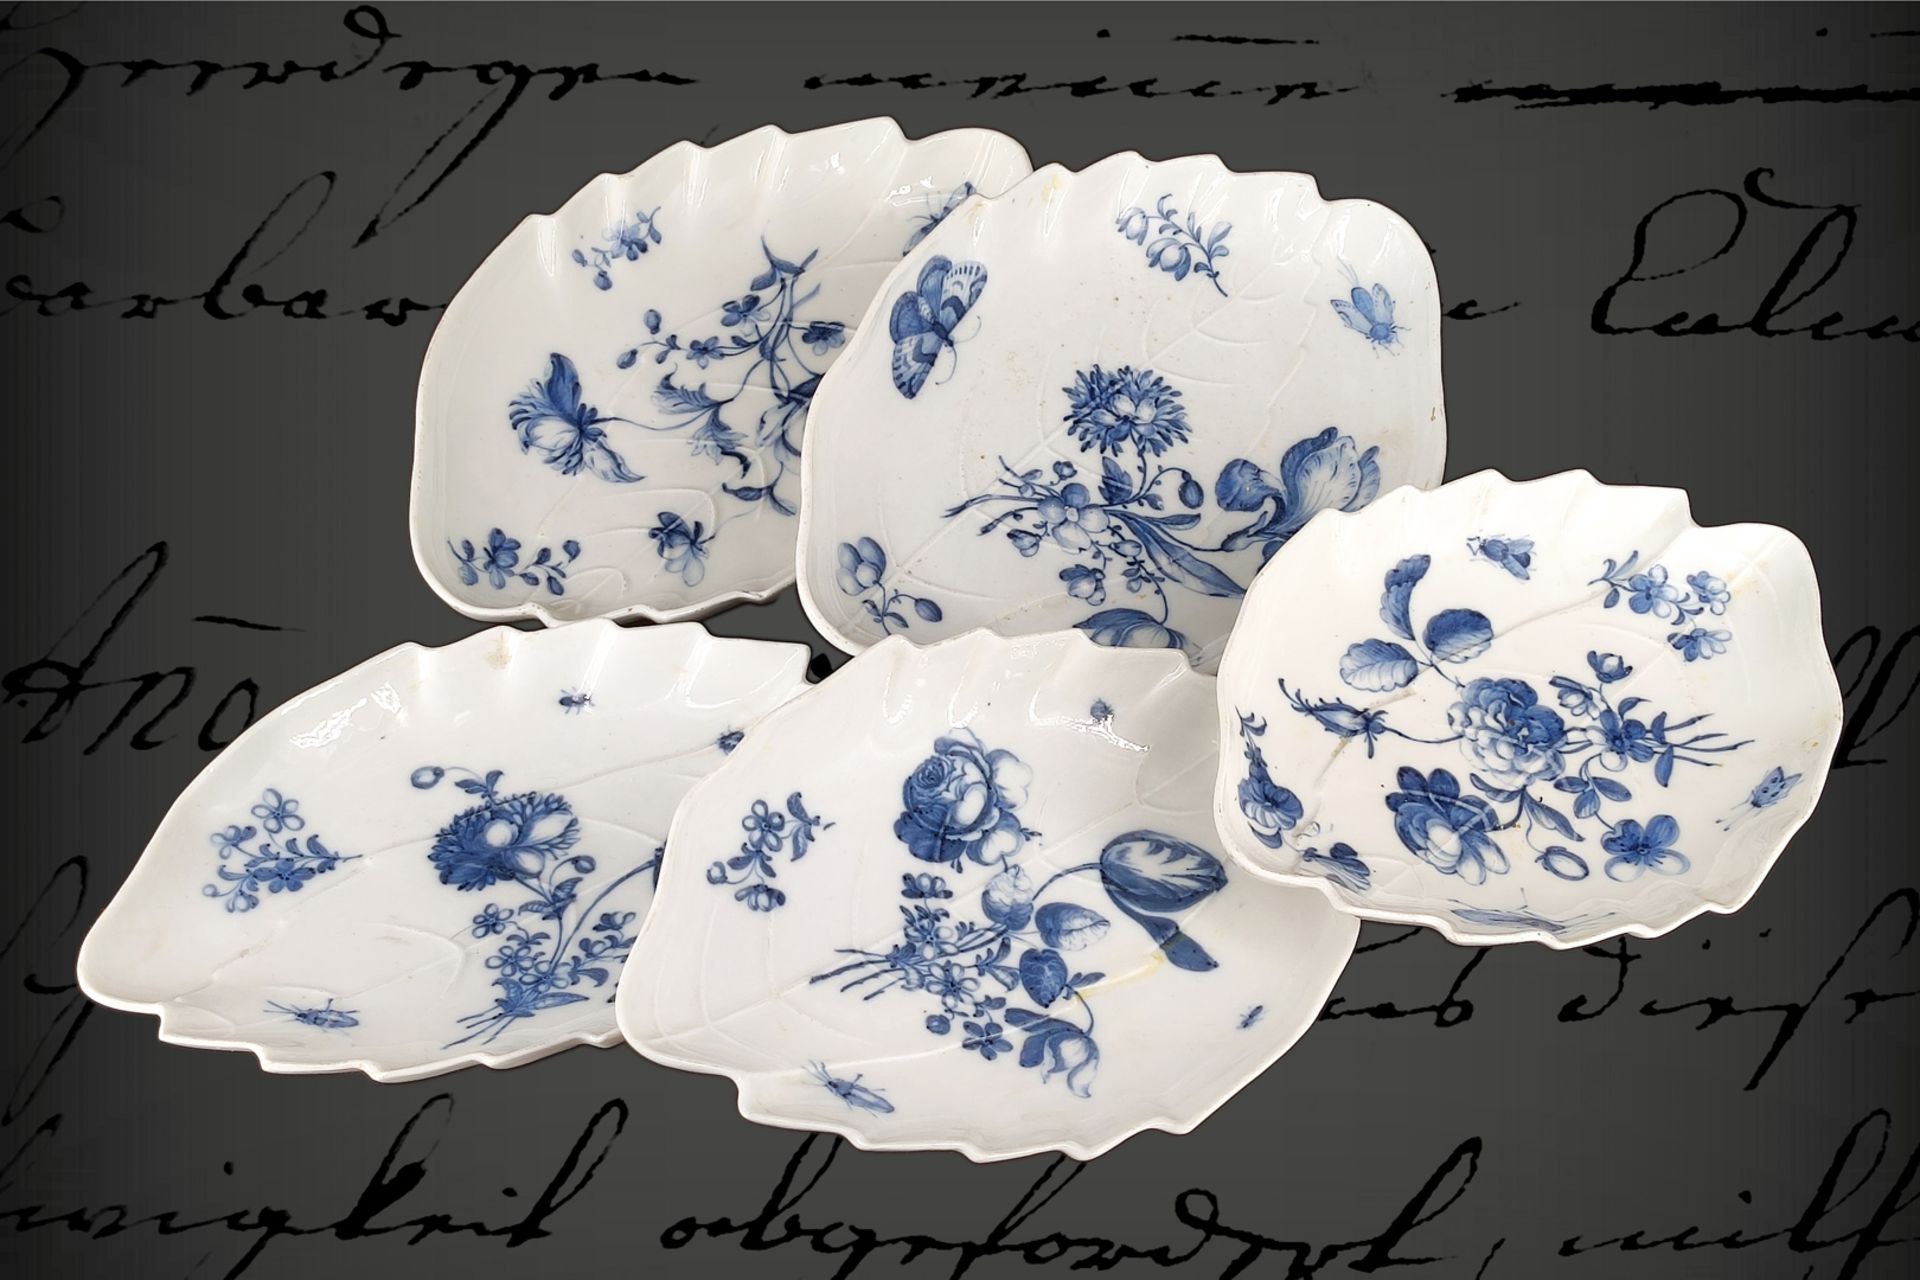 5 barocke Meissen Blattschalen, 1. Hälfte 18. Jh., Unterglasur blau, mit Blumen und Insekten, eine